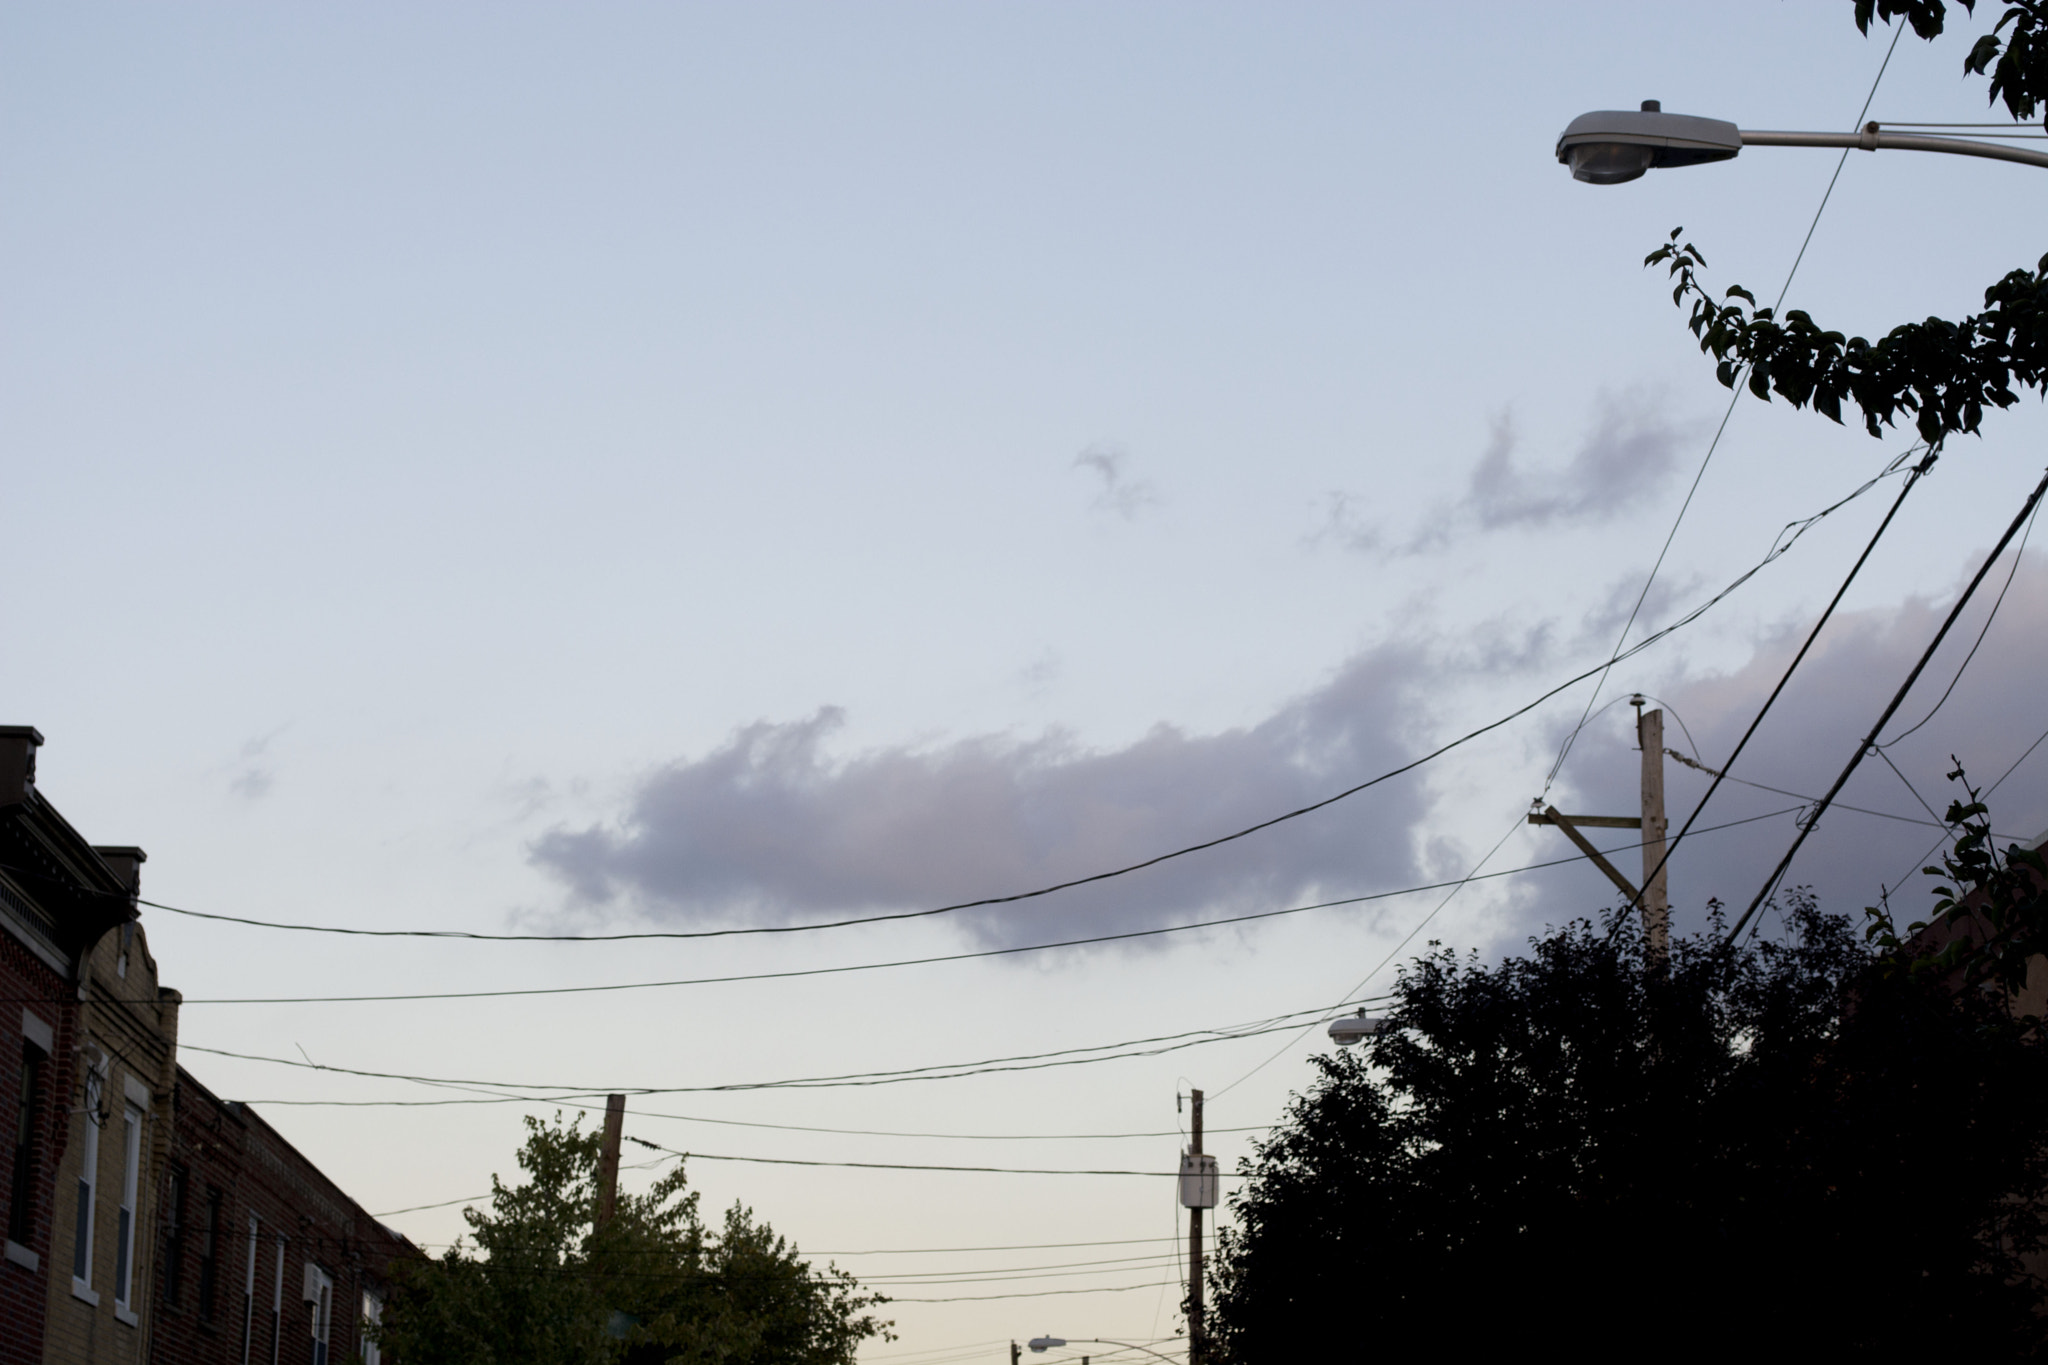 AF Zoom-Nikkor 35-135mm f/3.5-4.5 N sample photo. Clouds at sunset photography